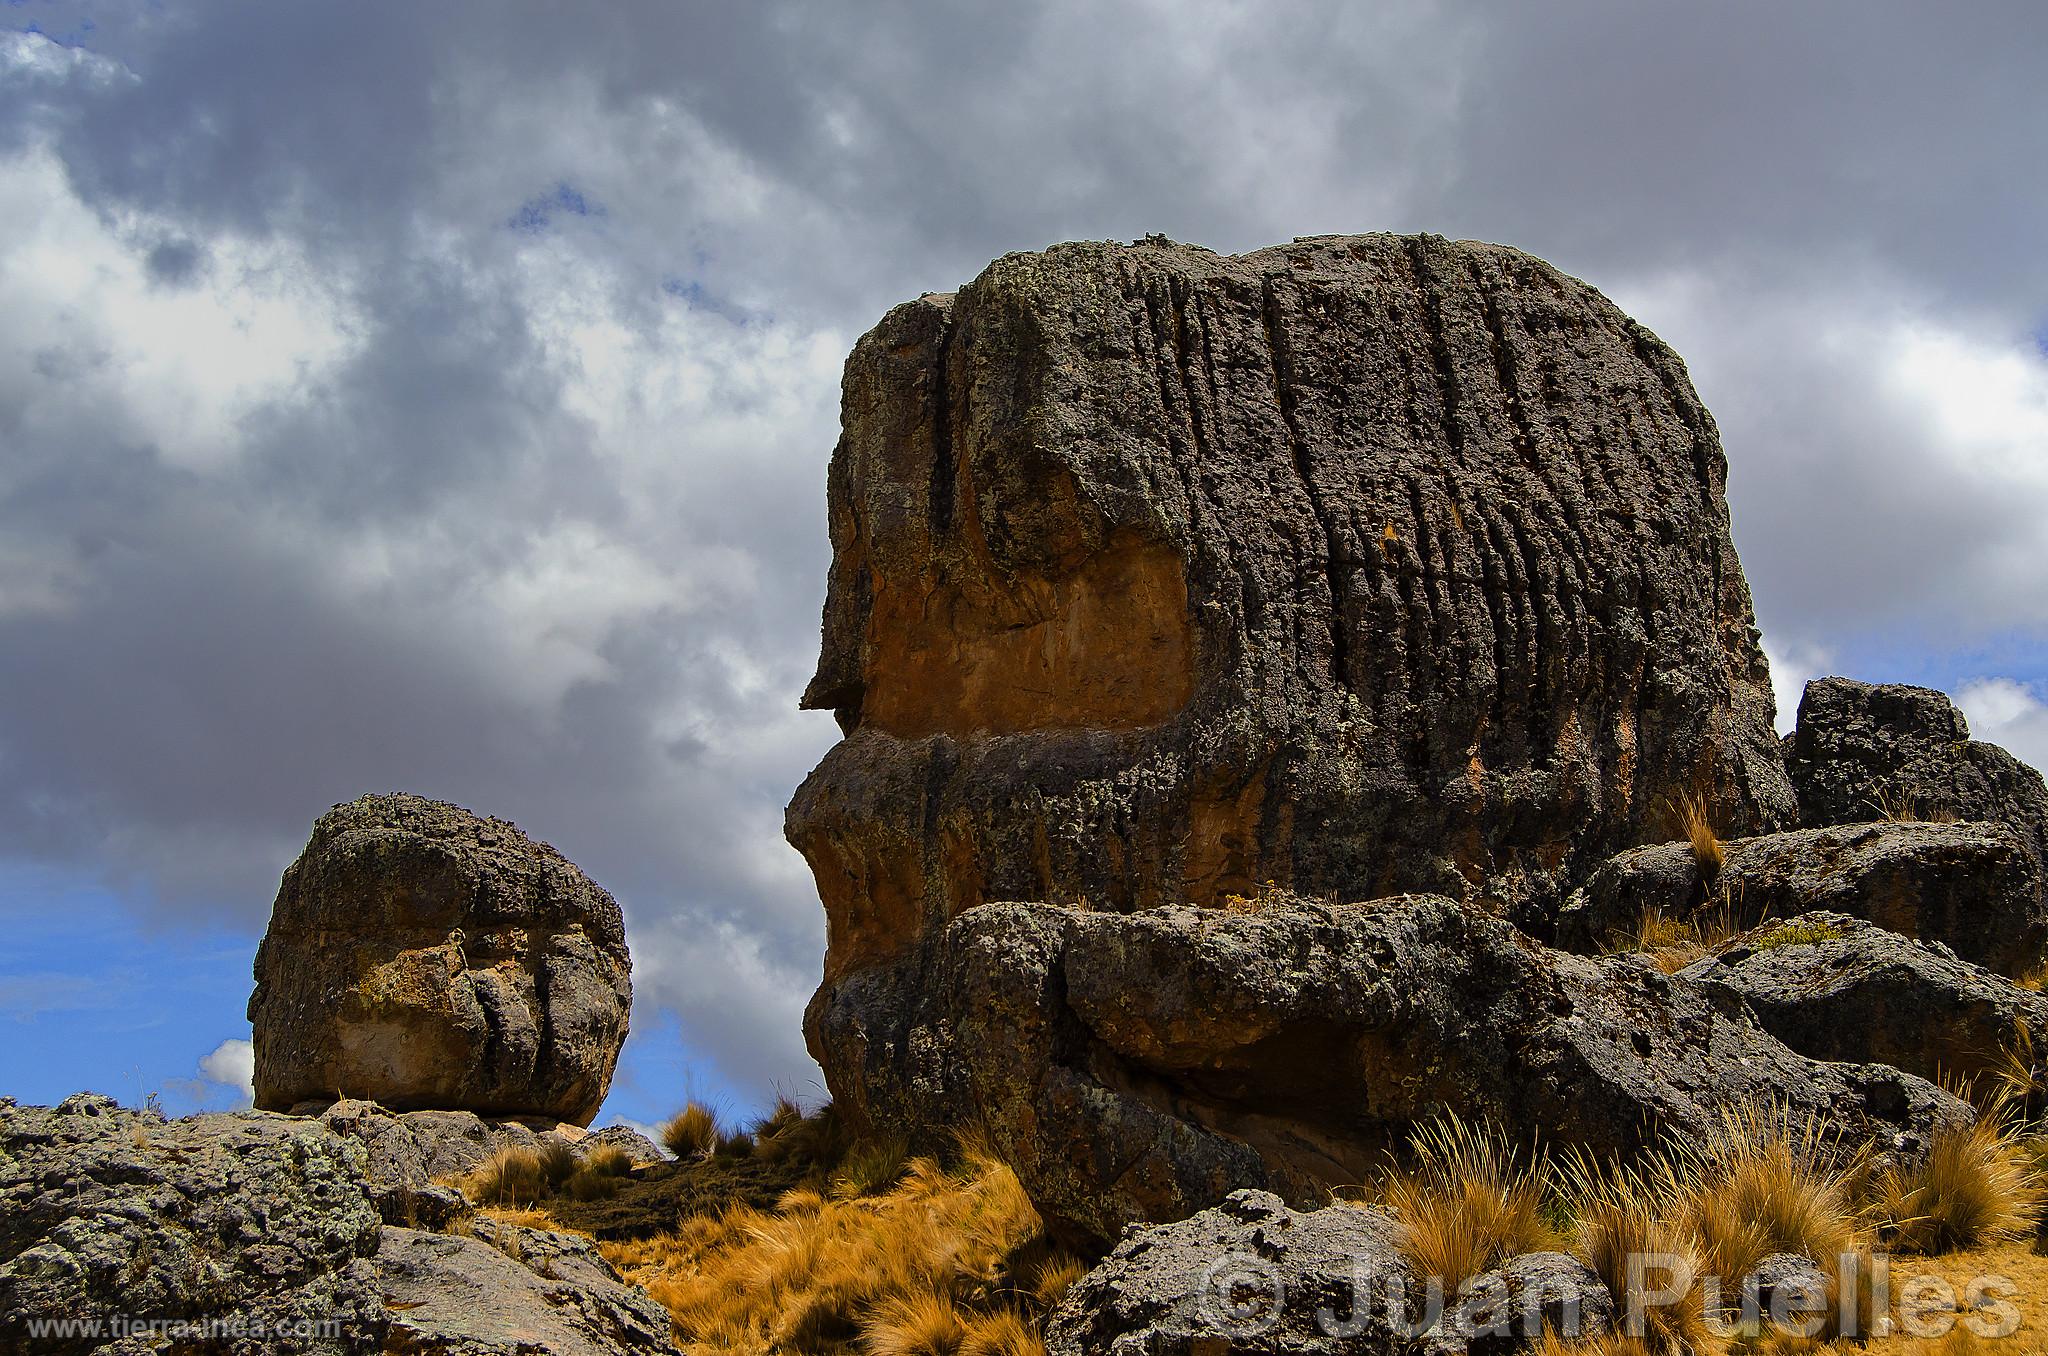 Bosque de rocas de Sachapite